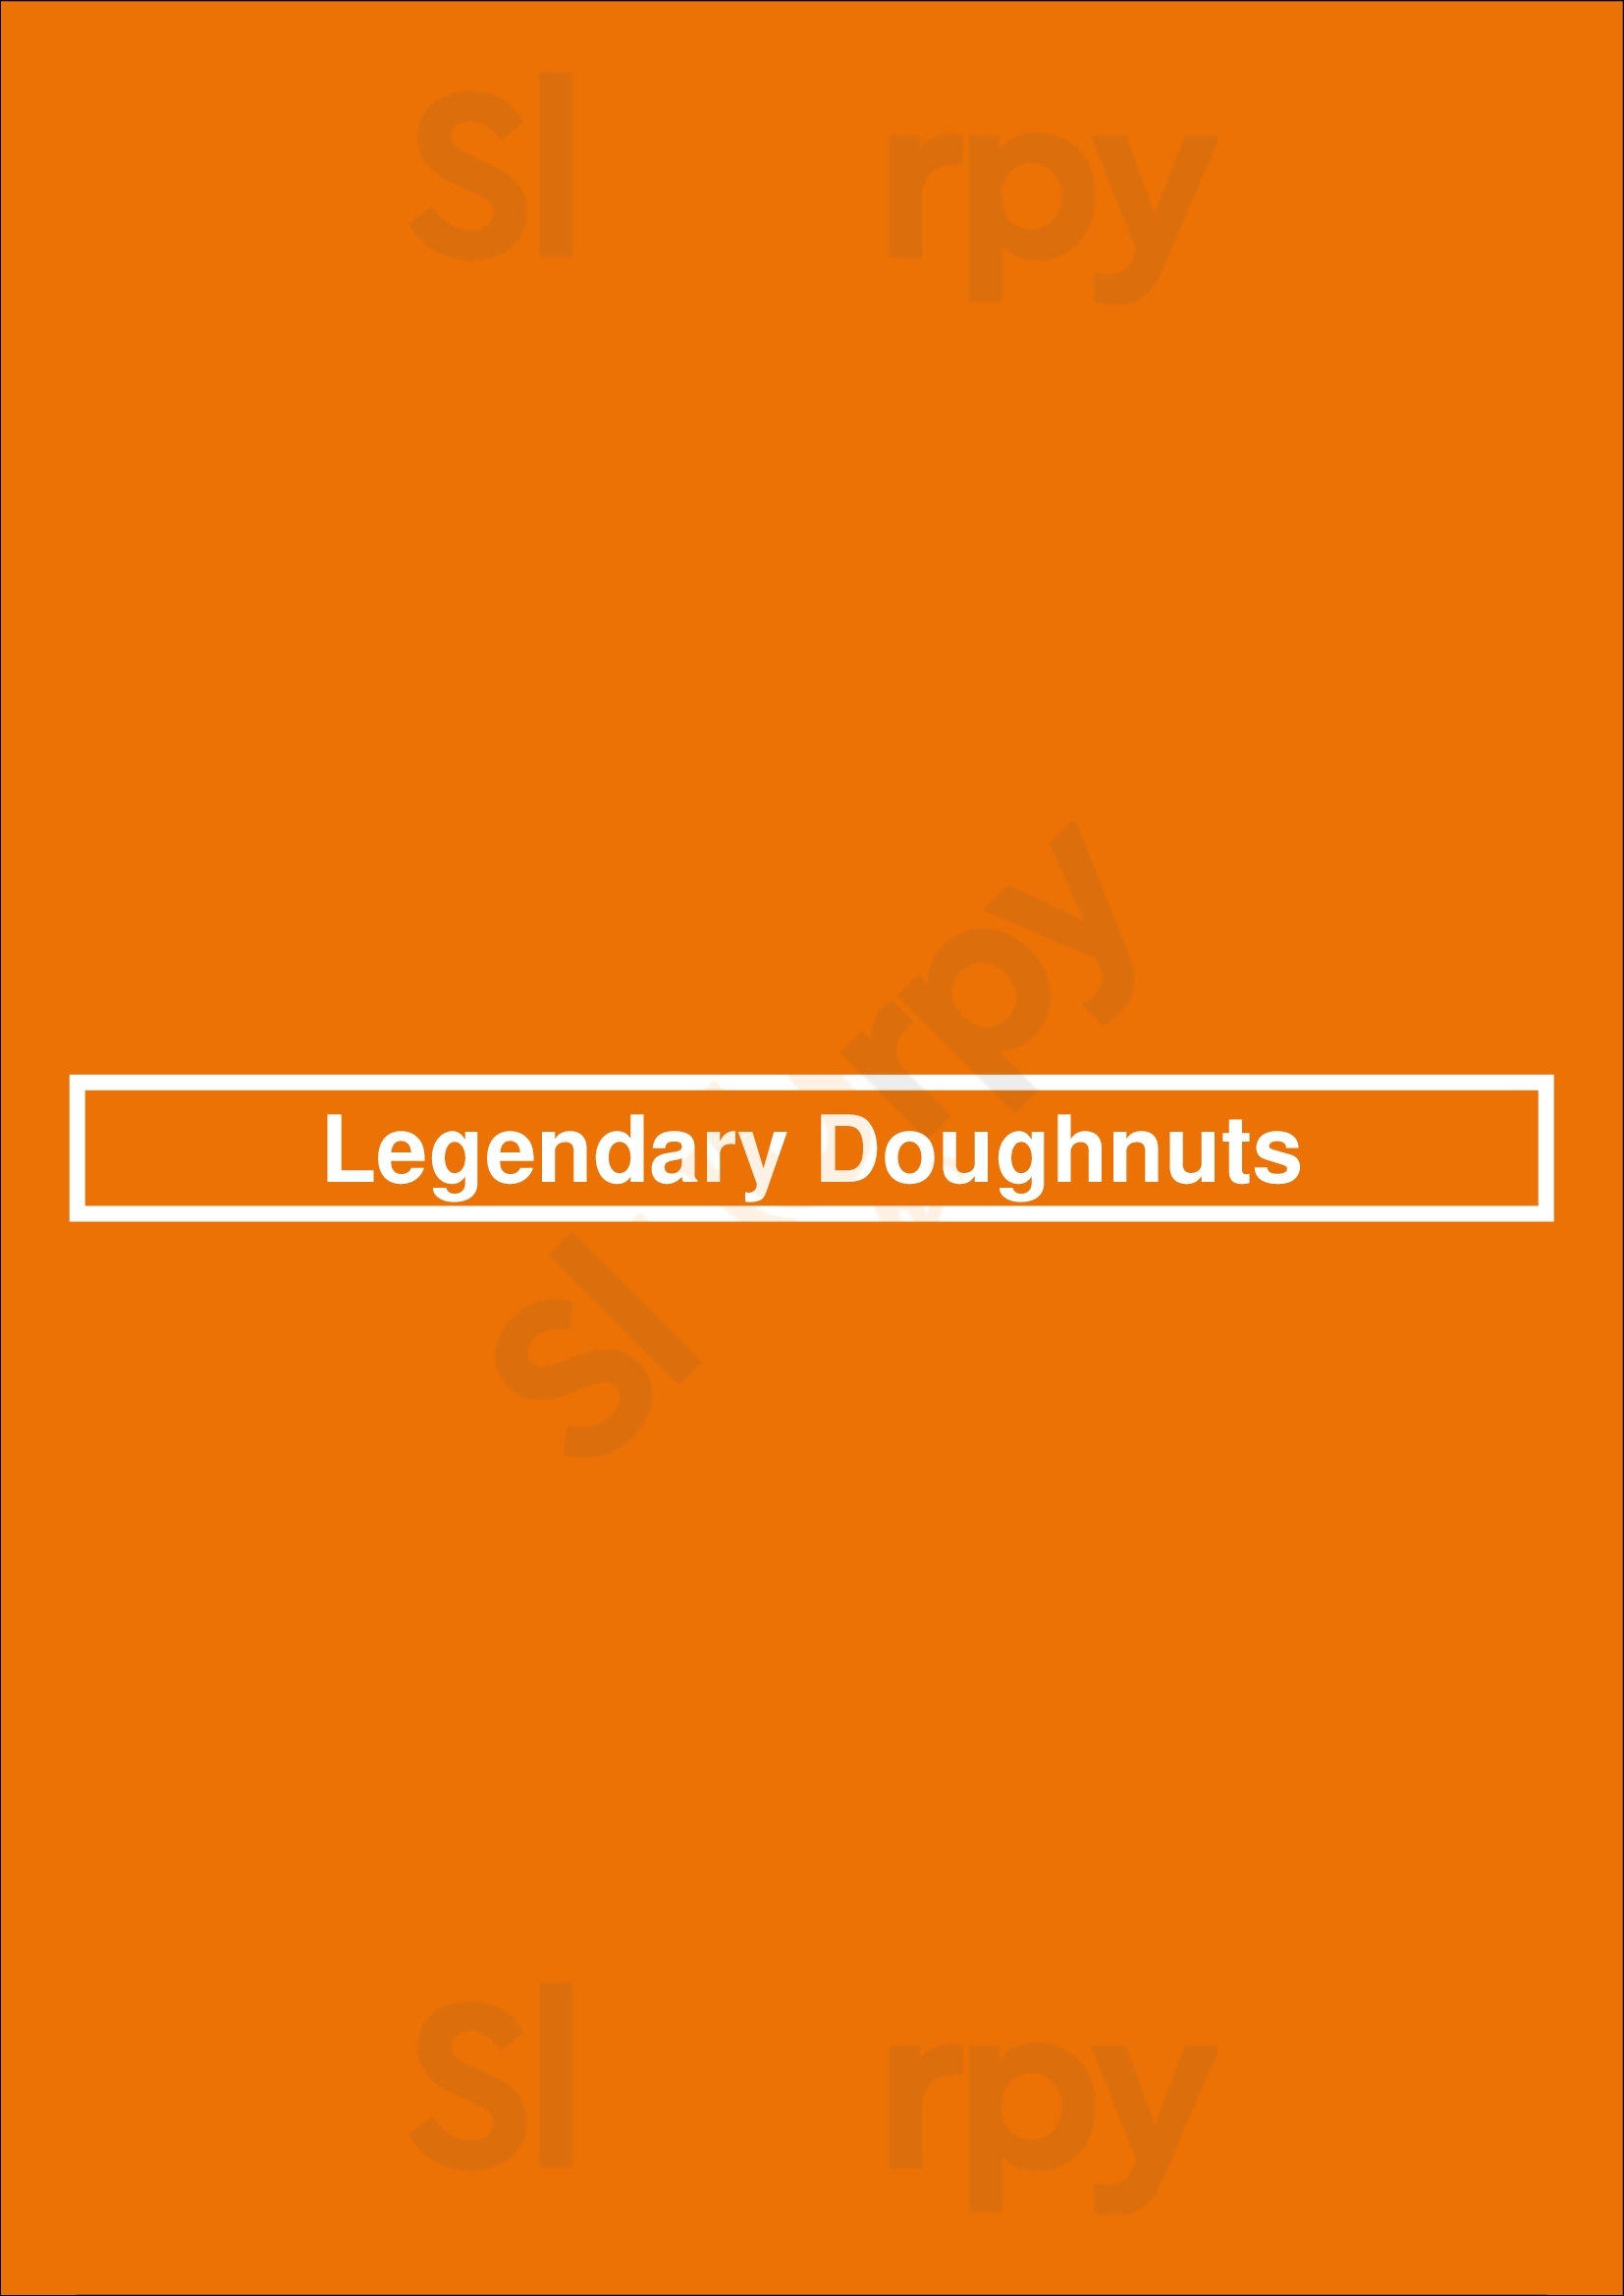 Legendary Doughnuts Covington Menu - 1